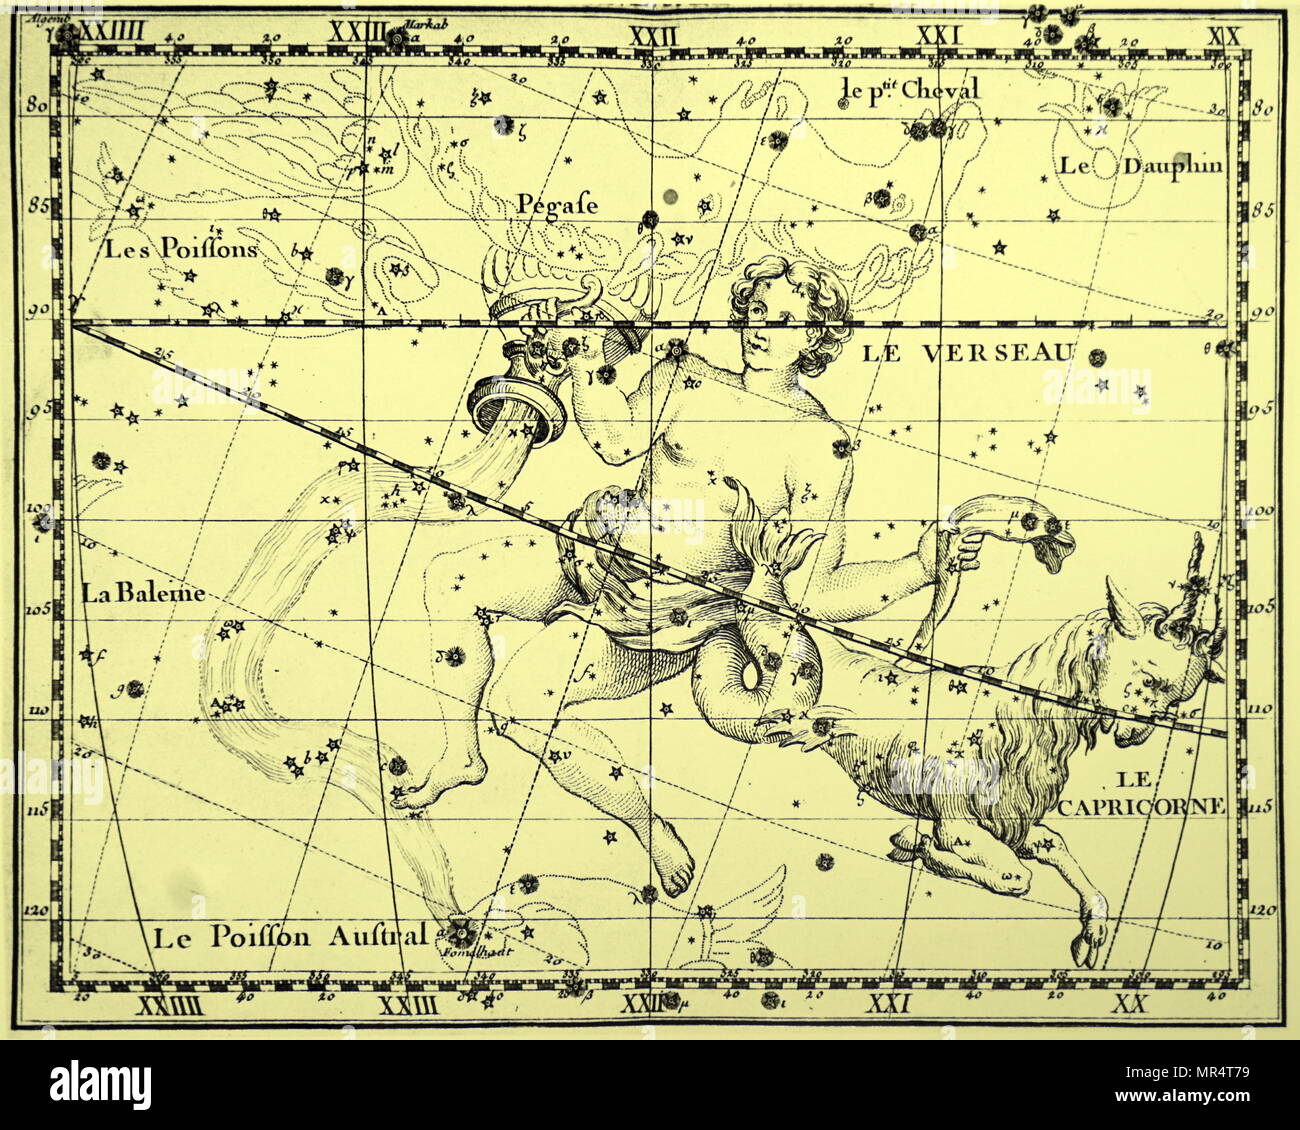 Grabado representando a las constelaciones de Acuario y Capricornio, tanto las constelaciones del zodíaco. Fecha del siglo xviii Foto de stock